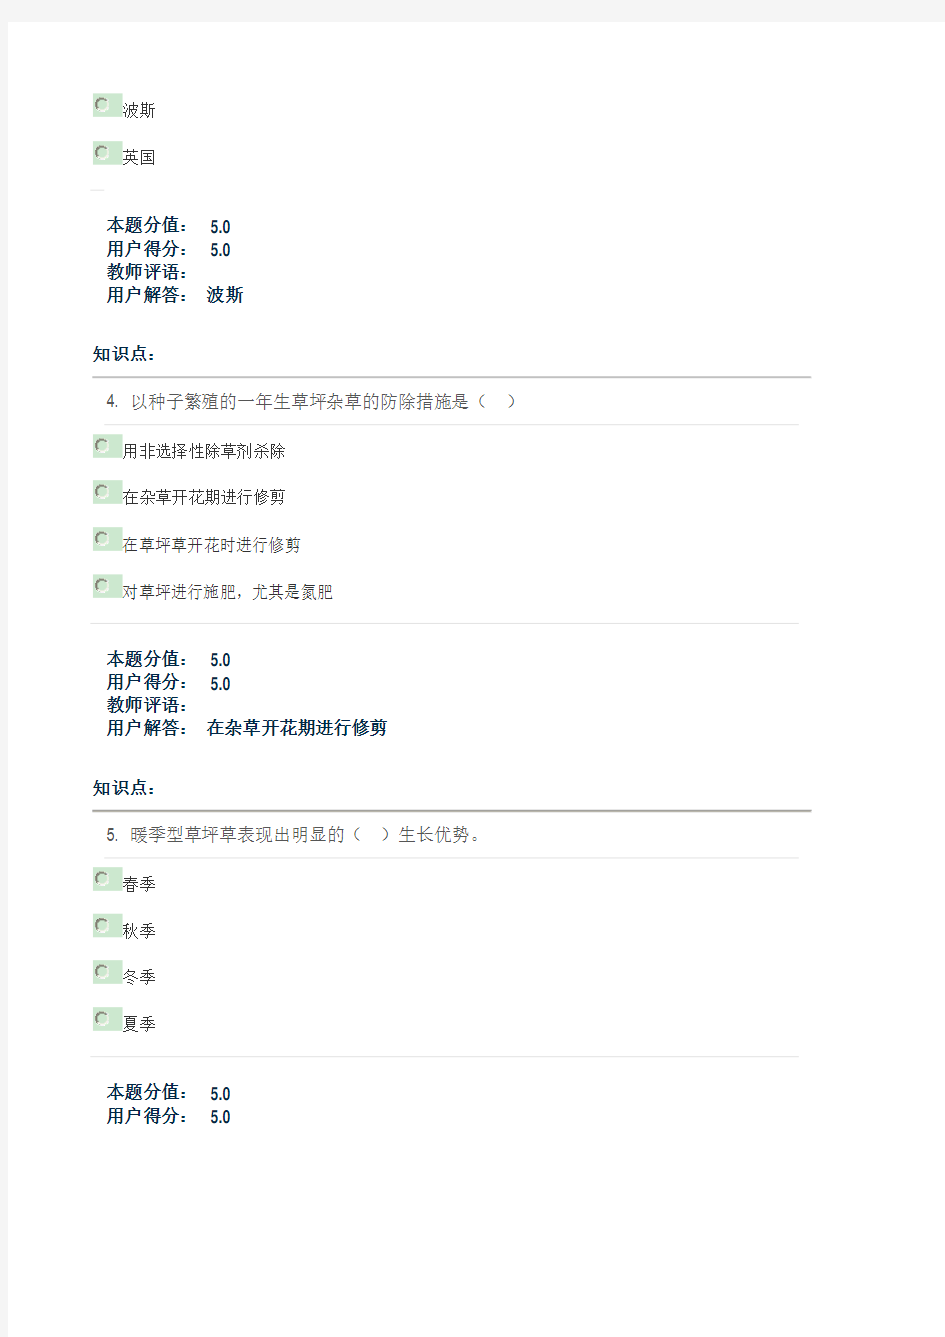 北京林业大学草坪学-在线课程作业(直接打印版)概论